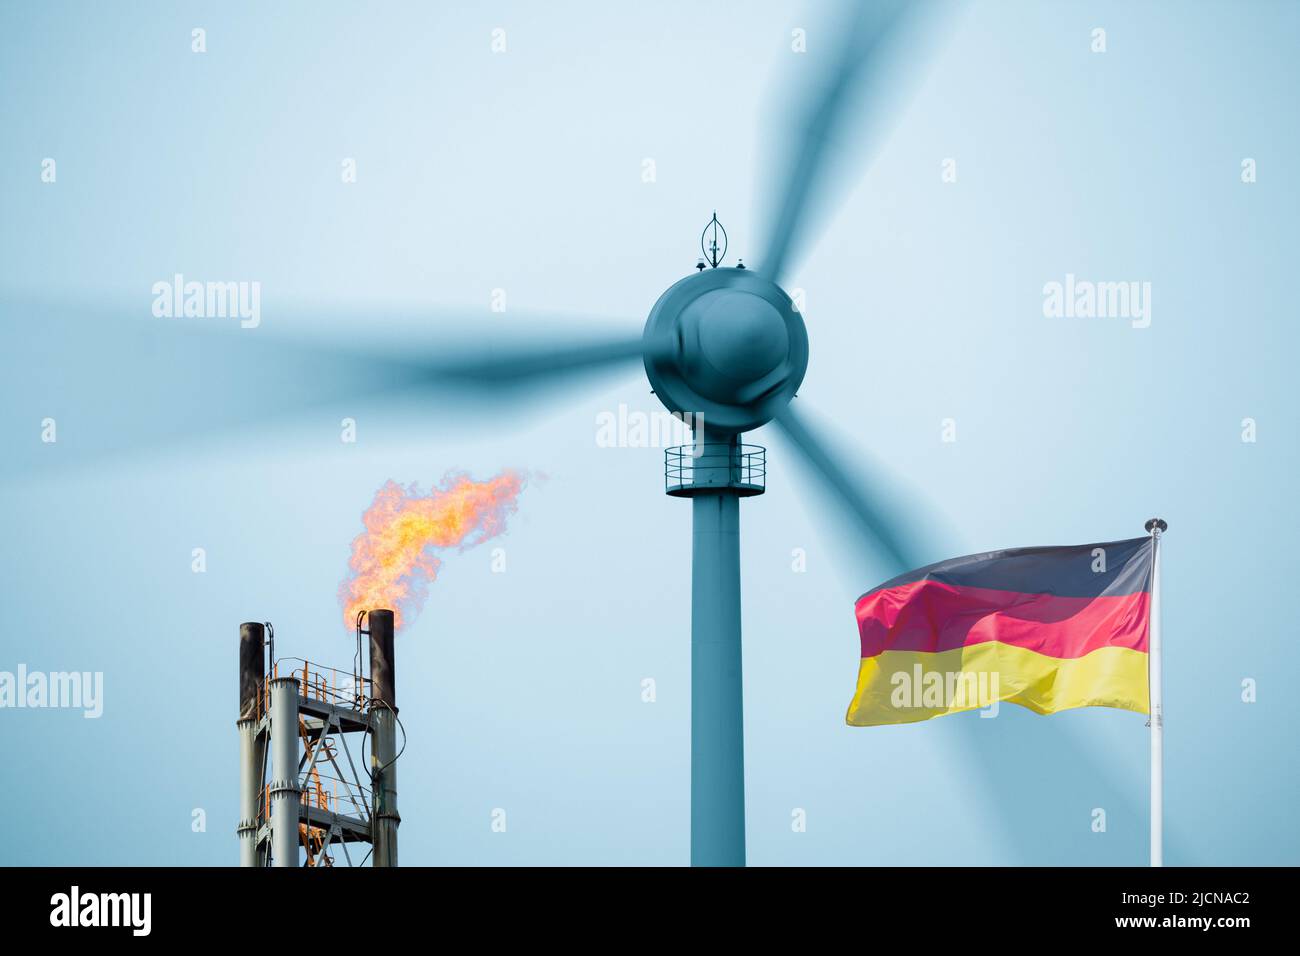 Energía renovable, gas, combustibles fósiles, gas ruso, aerogenerador, Calentamiento global, cambio climático, Alemania... concepto Foto de stock